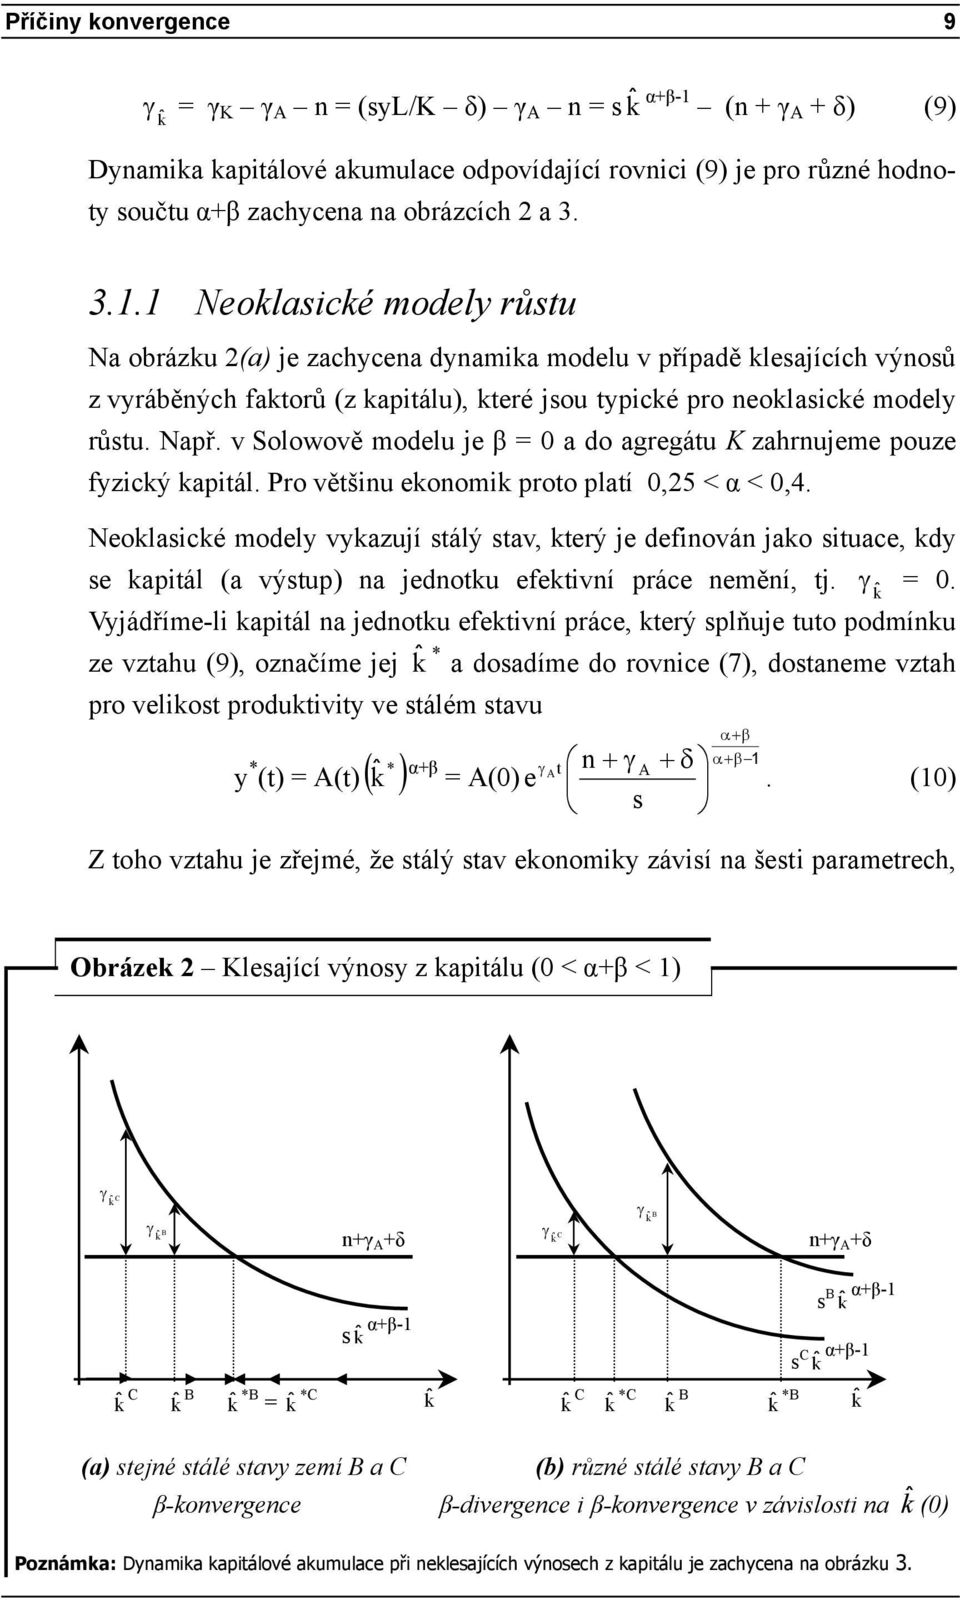 v Solowově modelu je β = 0 a do agregátu K zahrnujeme pouze fyzický kapitál. Pro většinu ekonomik proto platí 0,25 < α < 0,4.